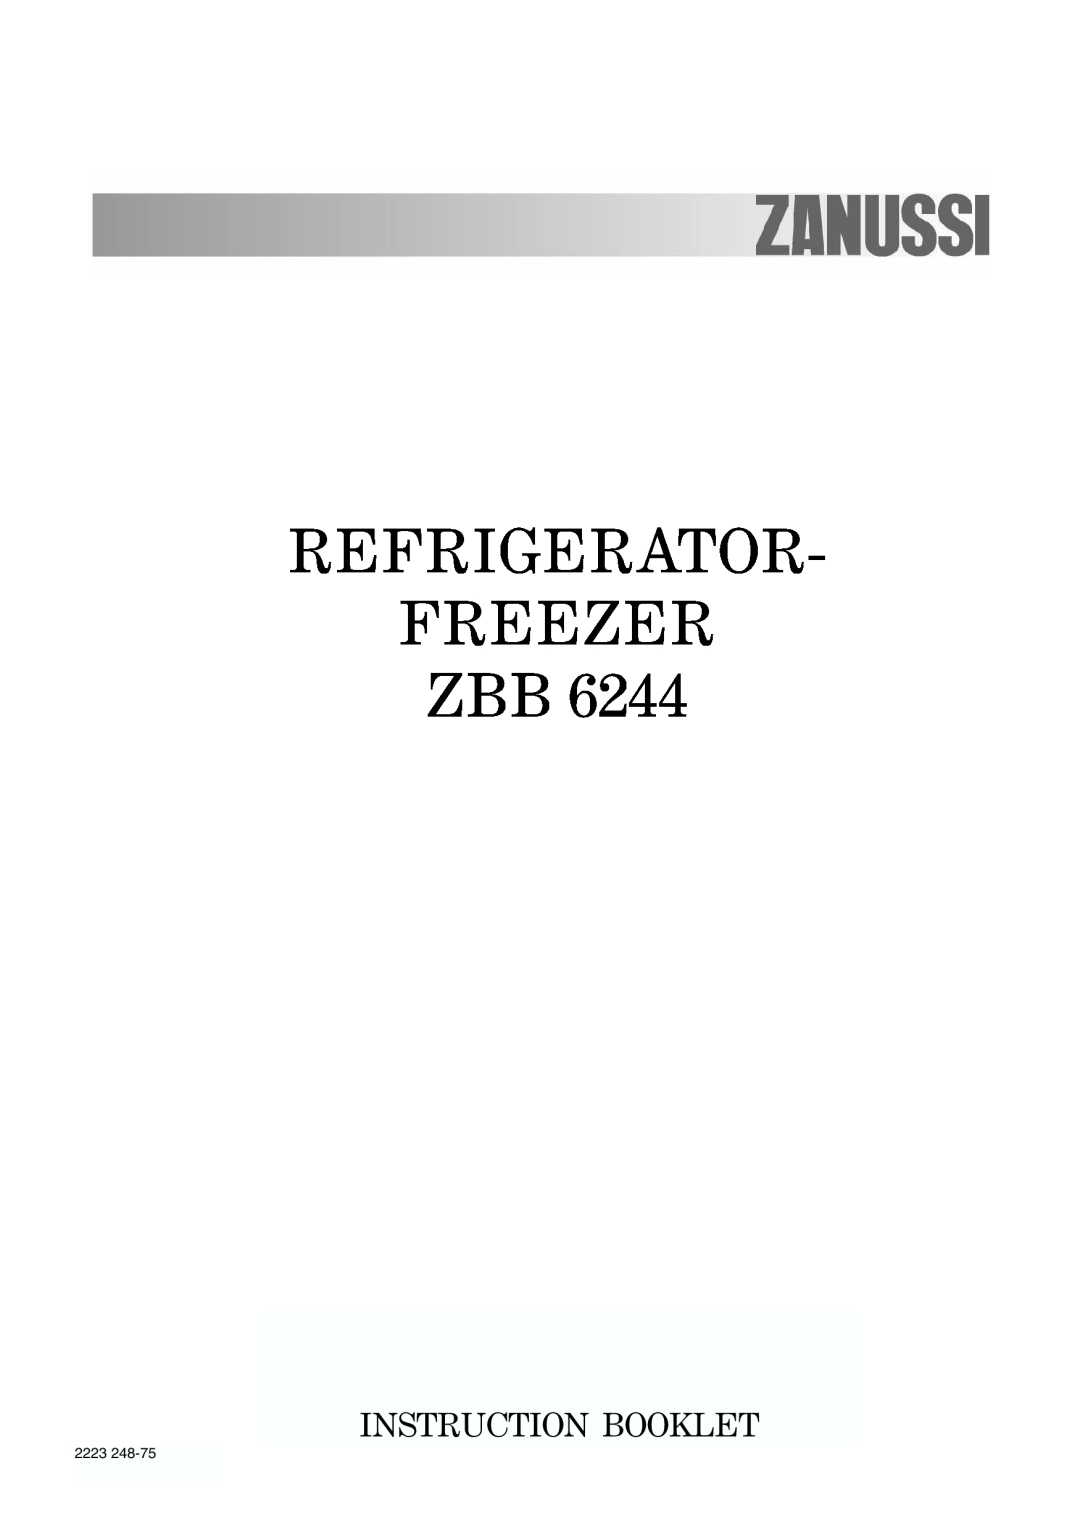 Zanussi ZBB 6244 manual Refrigerator Freezer Zbb, Instruction Booklet, 2223 